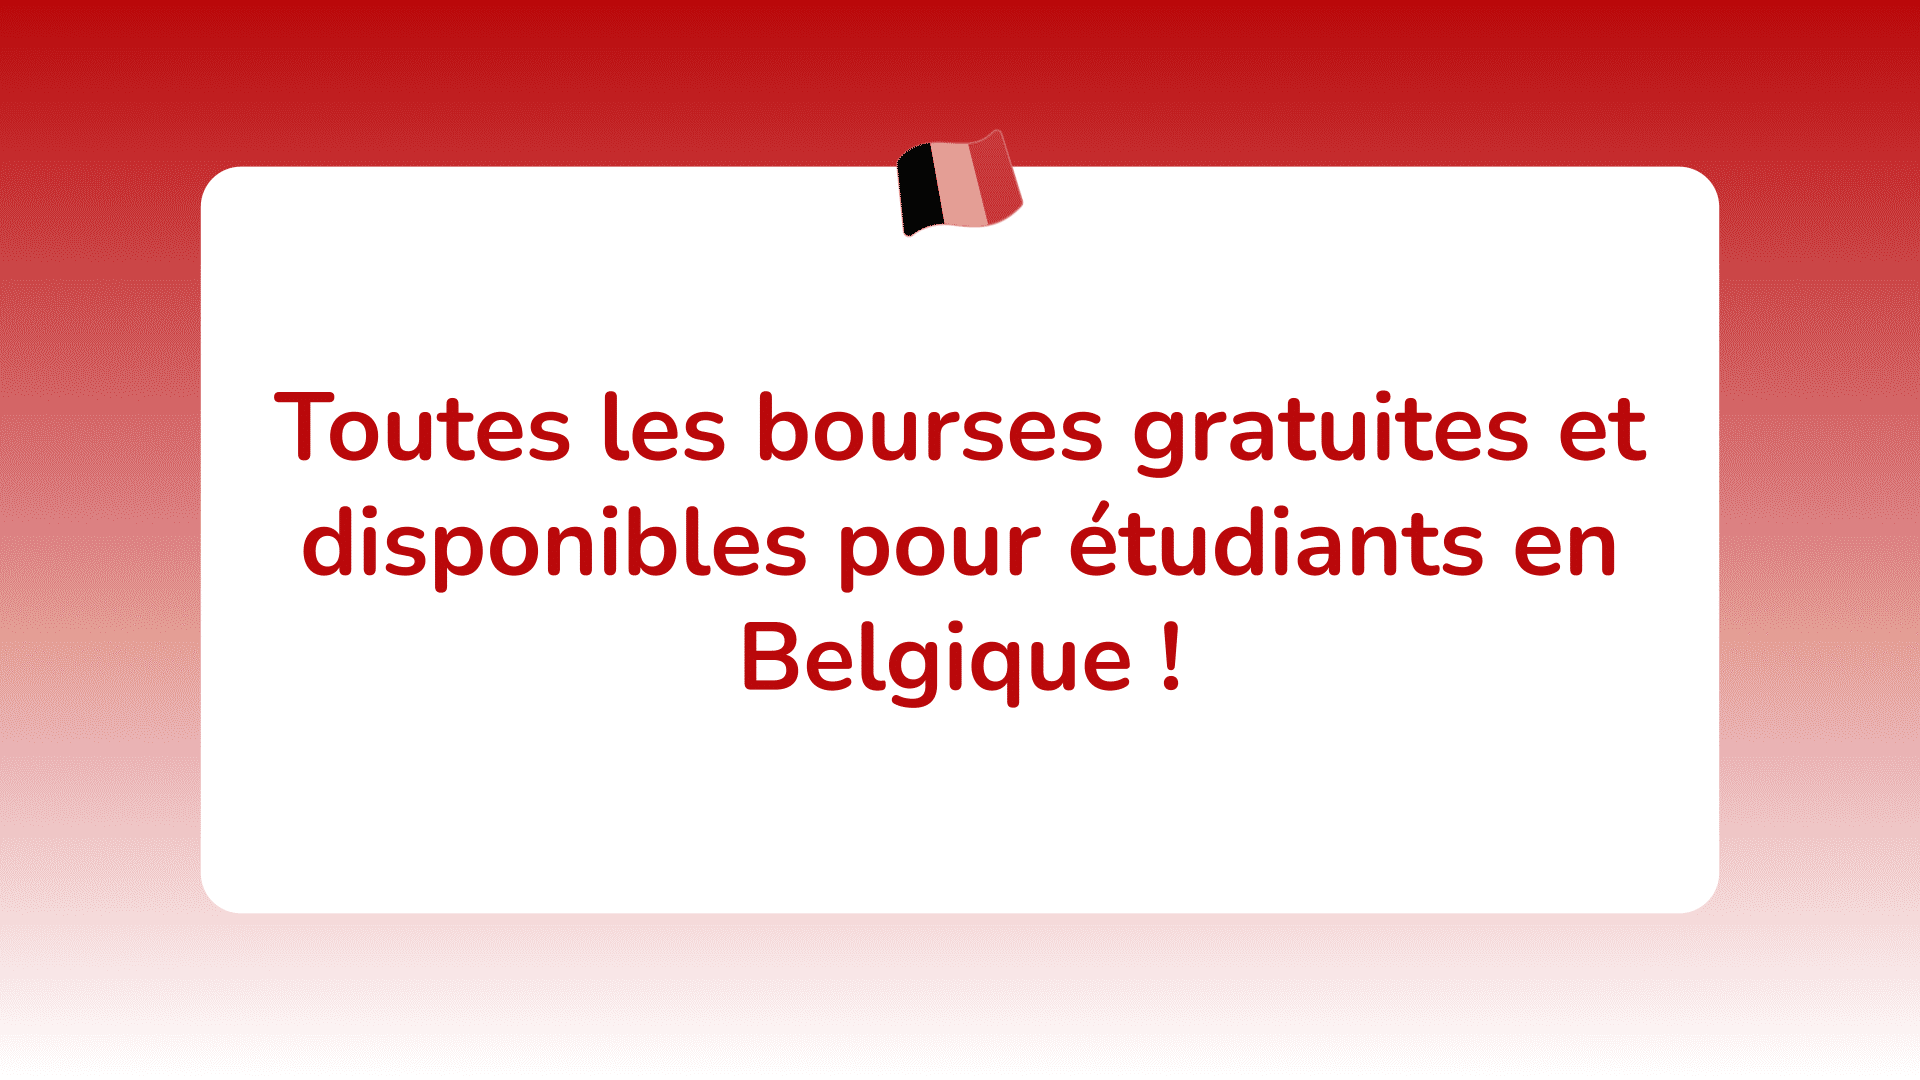 Toutes les bourses gratuites et disponibles pour étudiants en Belgique !